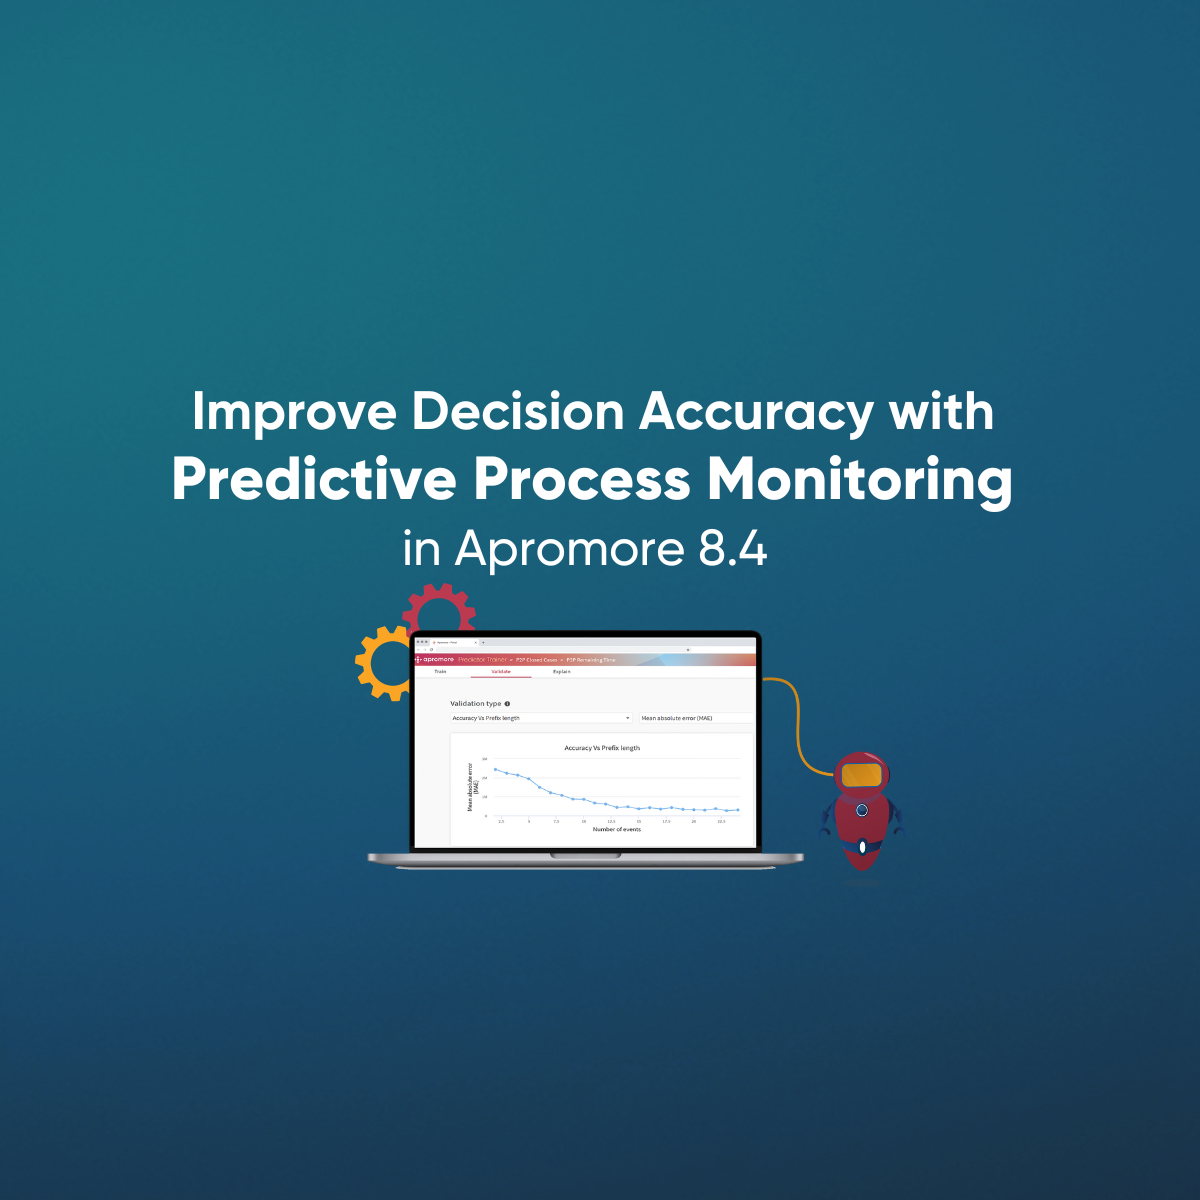 Apromore Announces Predictive Process Monitoring